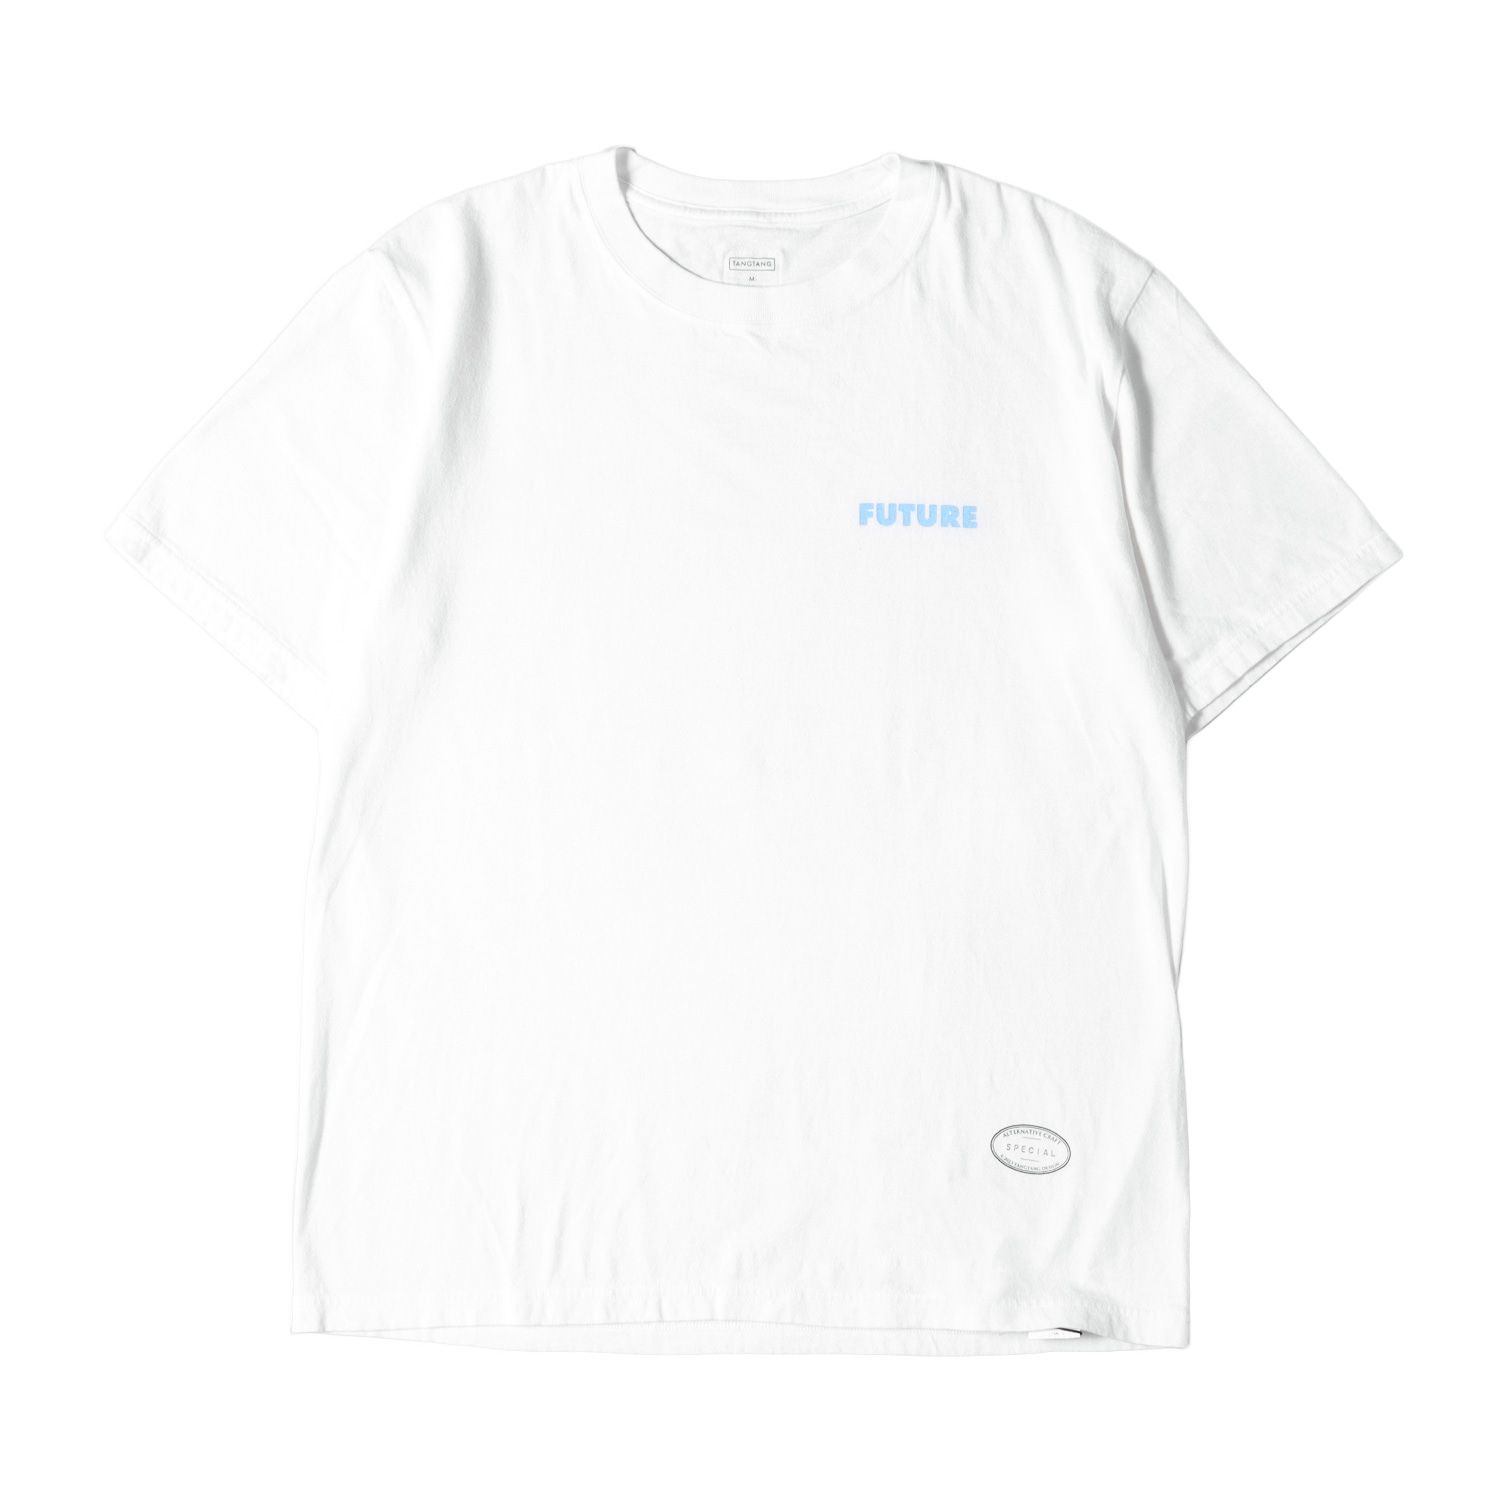 TANGTANG タンタン Tシャツ サイズ:M FUTURE ロゴ クルーネック 半袖 Tシャツ AINT T ホワイト 白 トップス カットソー コットン【メンズ】